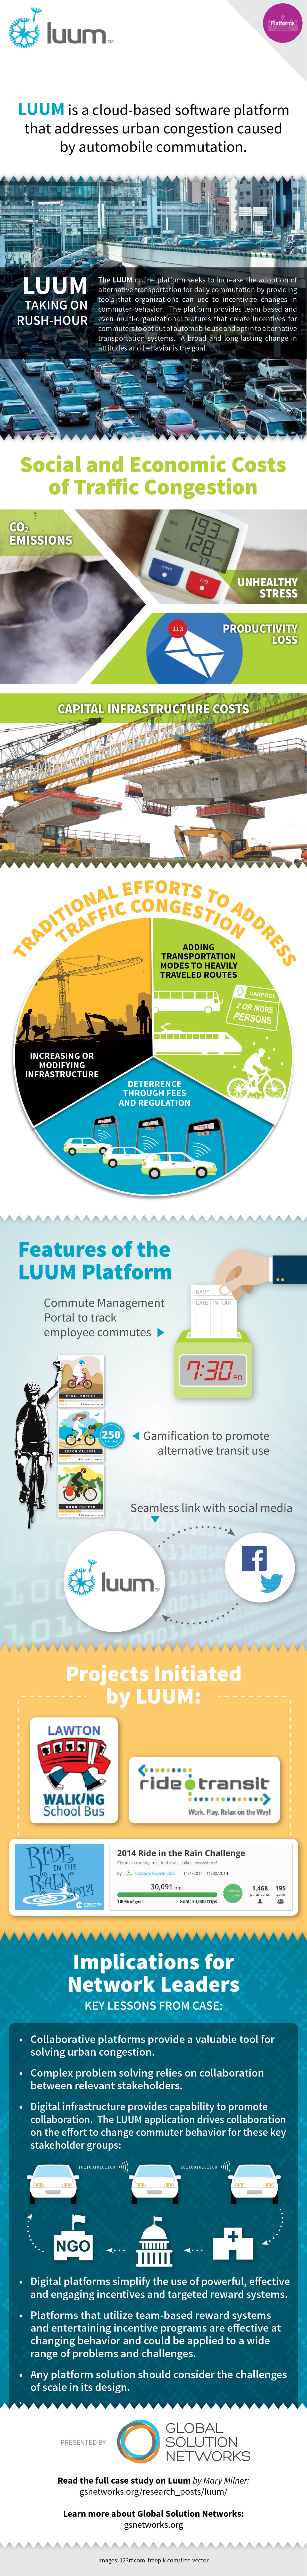 LUUM Infographic rev